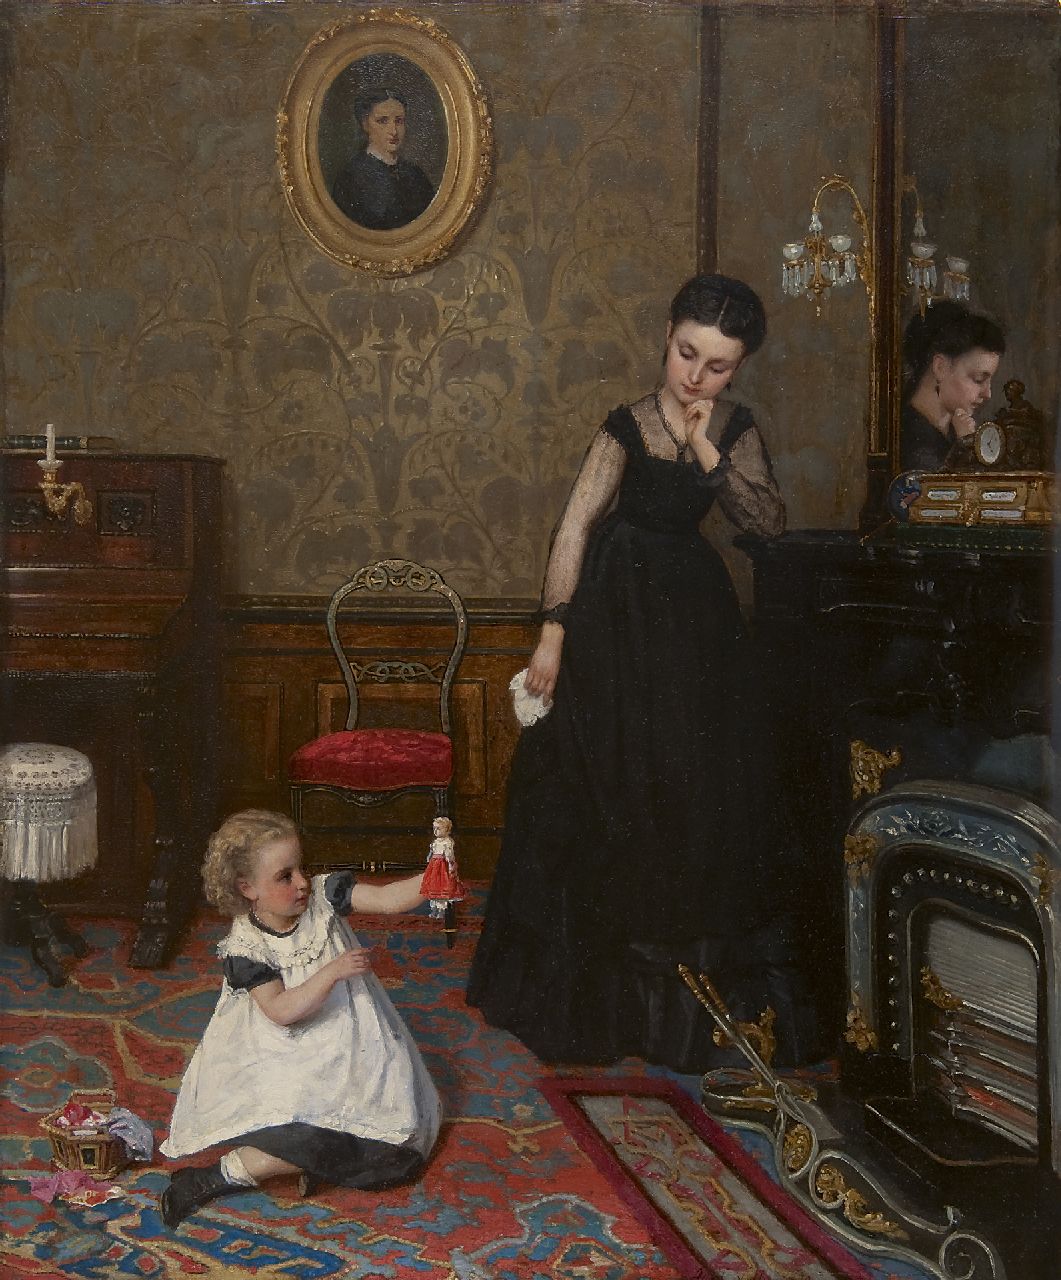 Neuhuys J.A.  | Johannes 'Albert' Neuhuys, Interieur met moeder en kind, olieverf op paneel 79,7 x 64,9 cm, gesigneerd rechts van het midden. en gedateerd '70